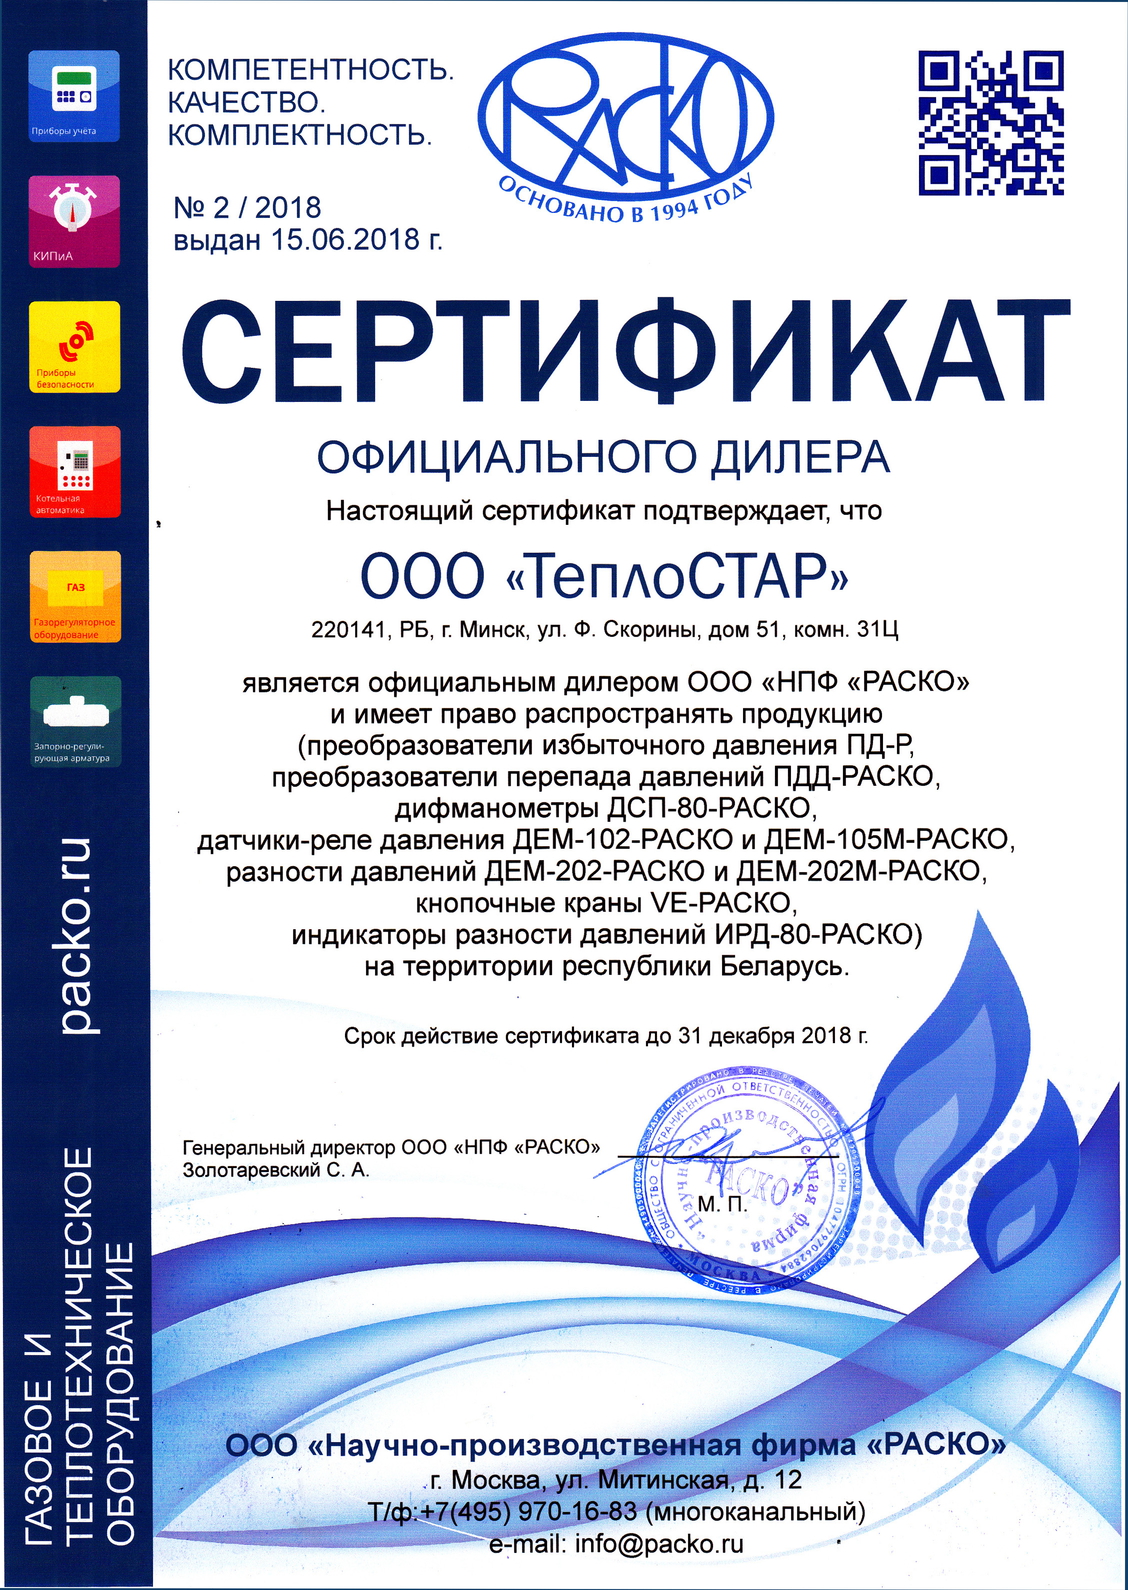 Изображение Сертификата дилера ООО «НПФ «РАСКО»